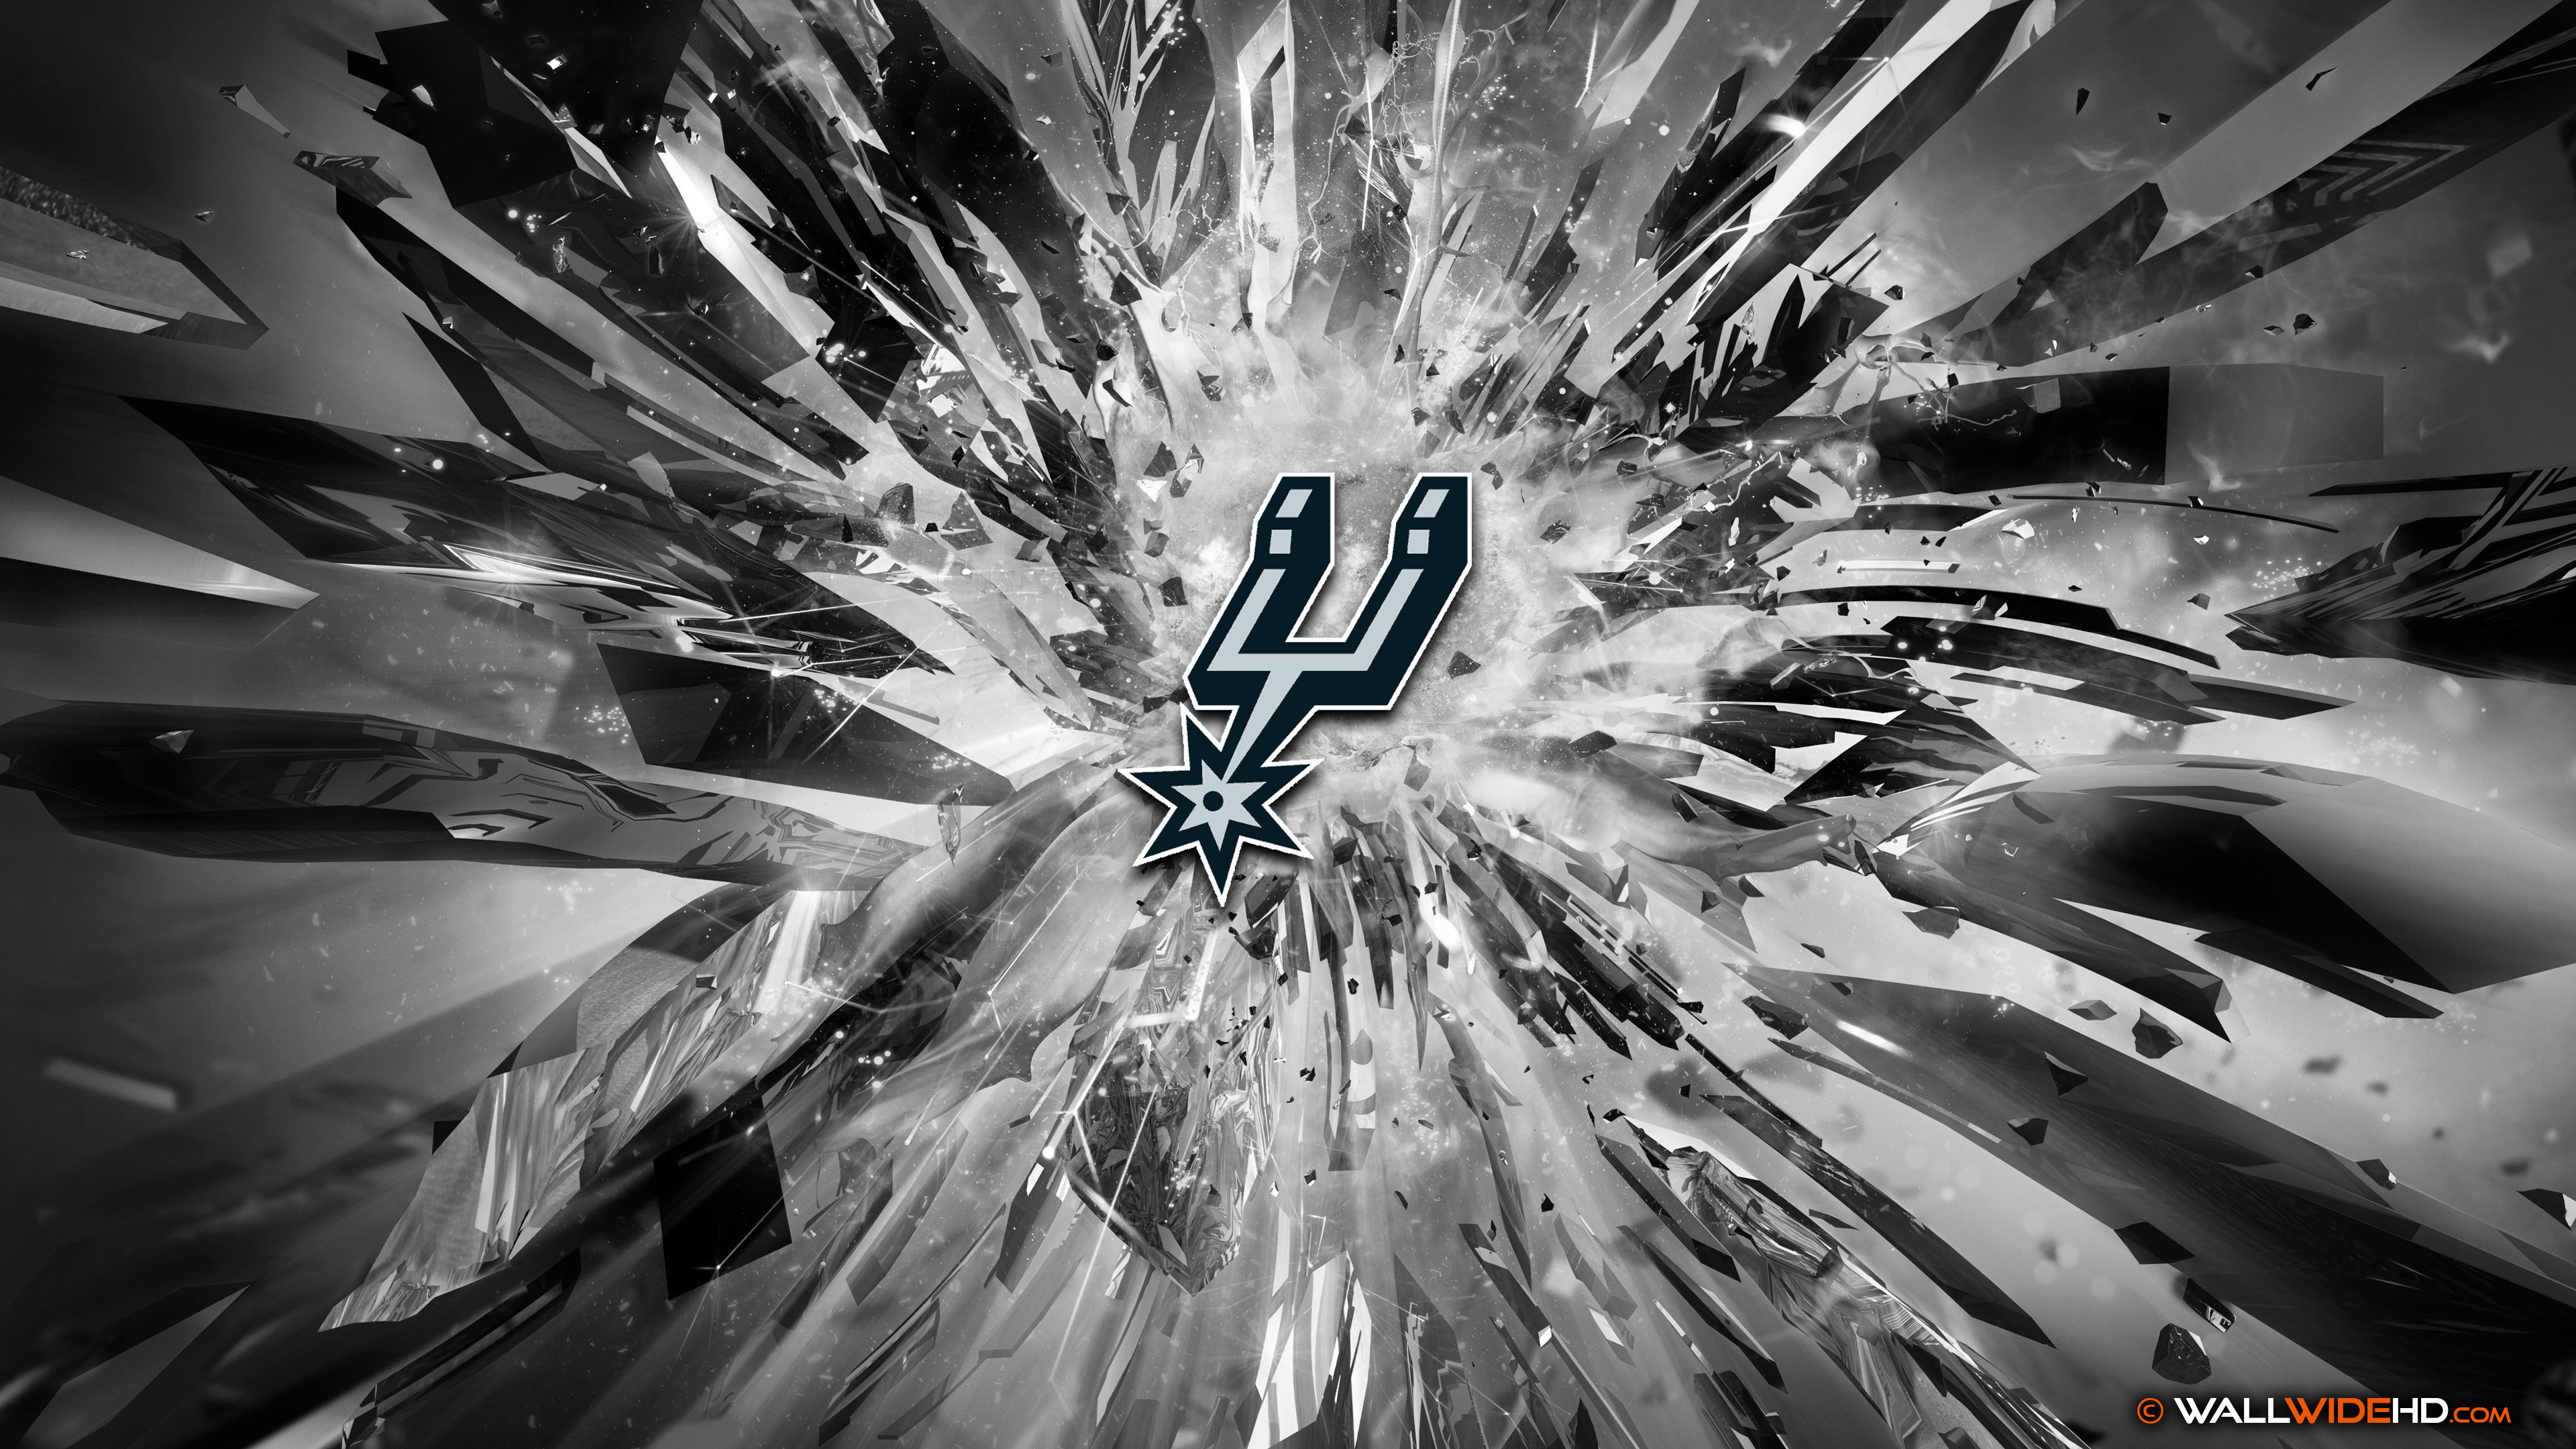 Spurs Wallpaper - San Antonio Spurs 2018 - HD Wallpaper 